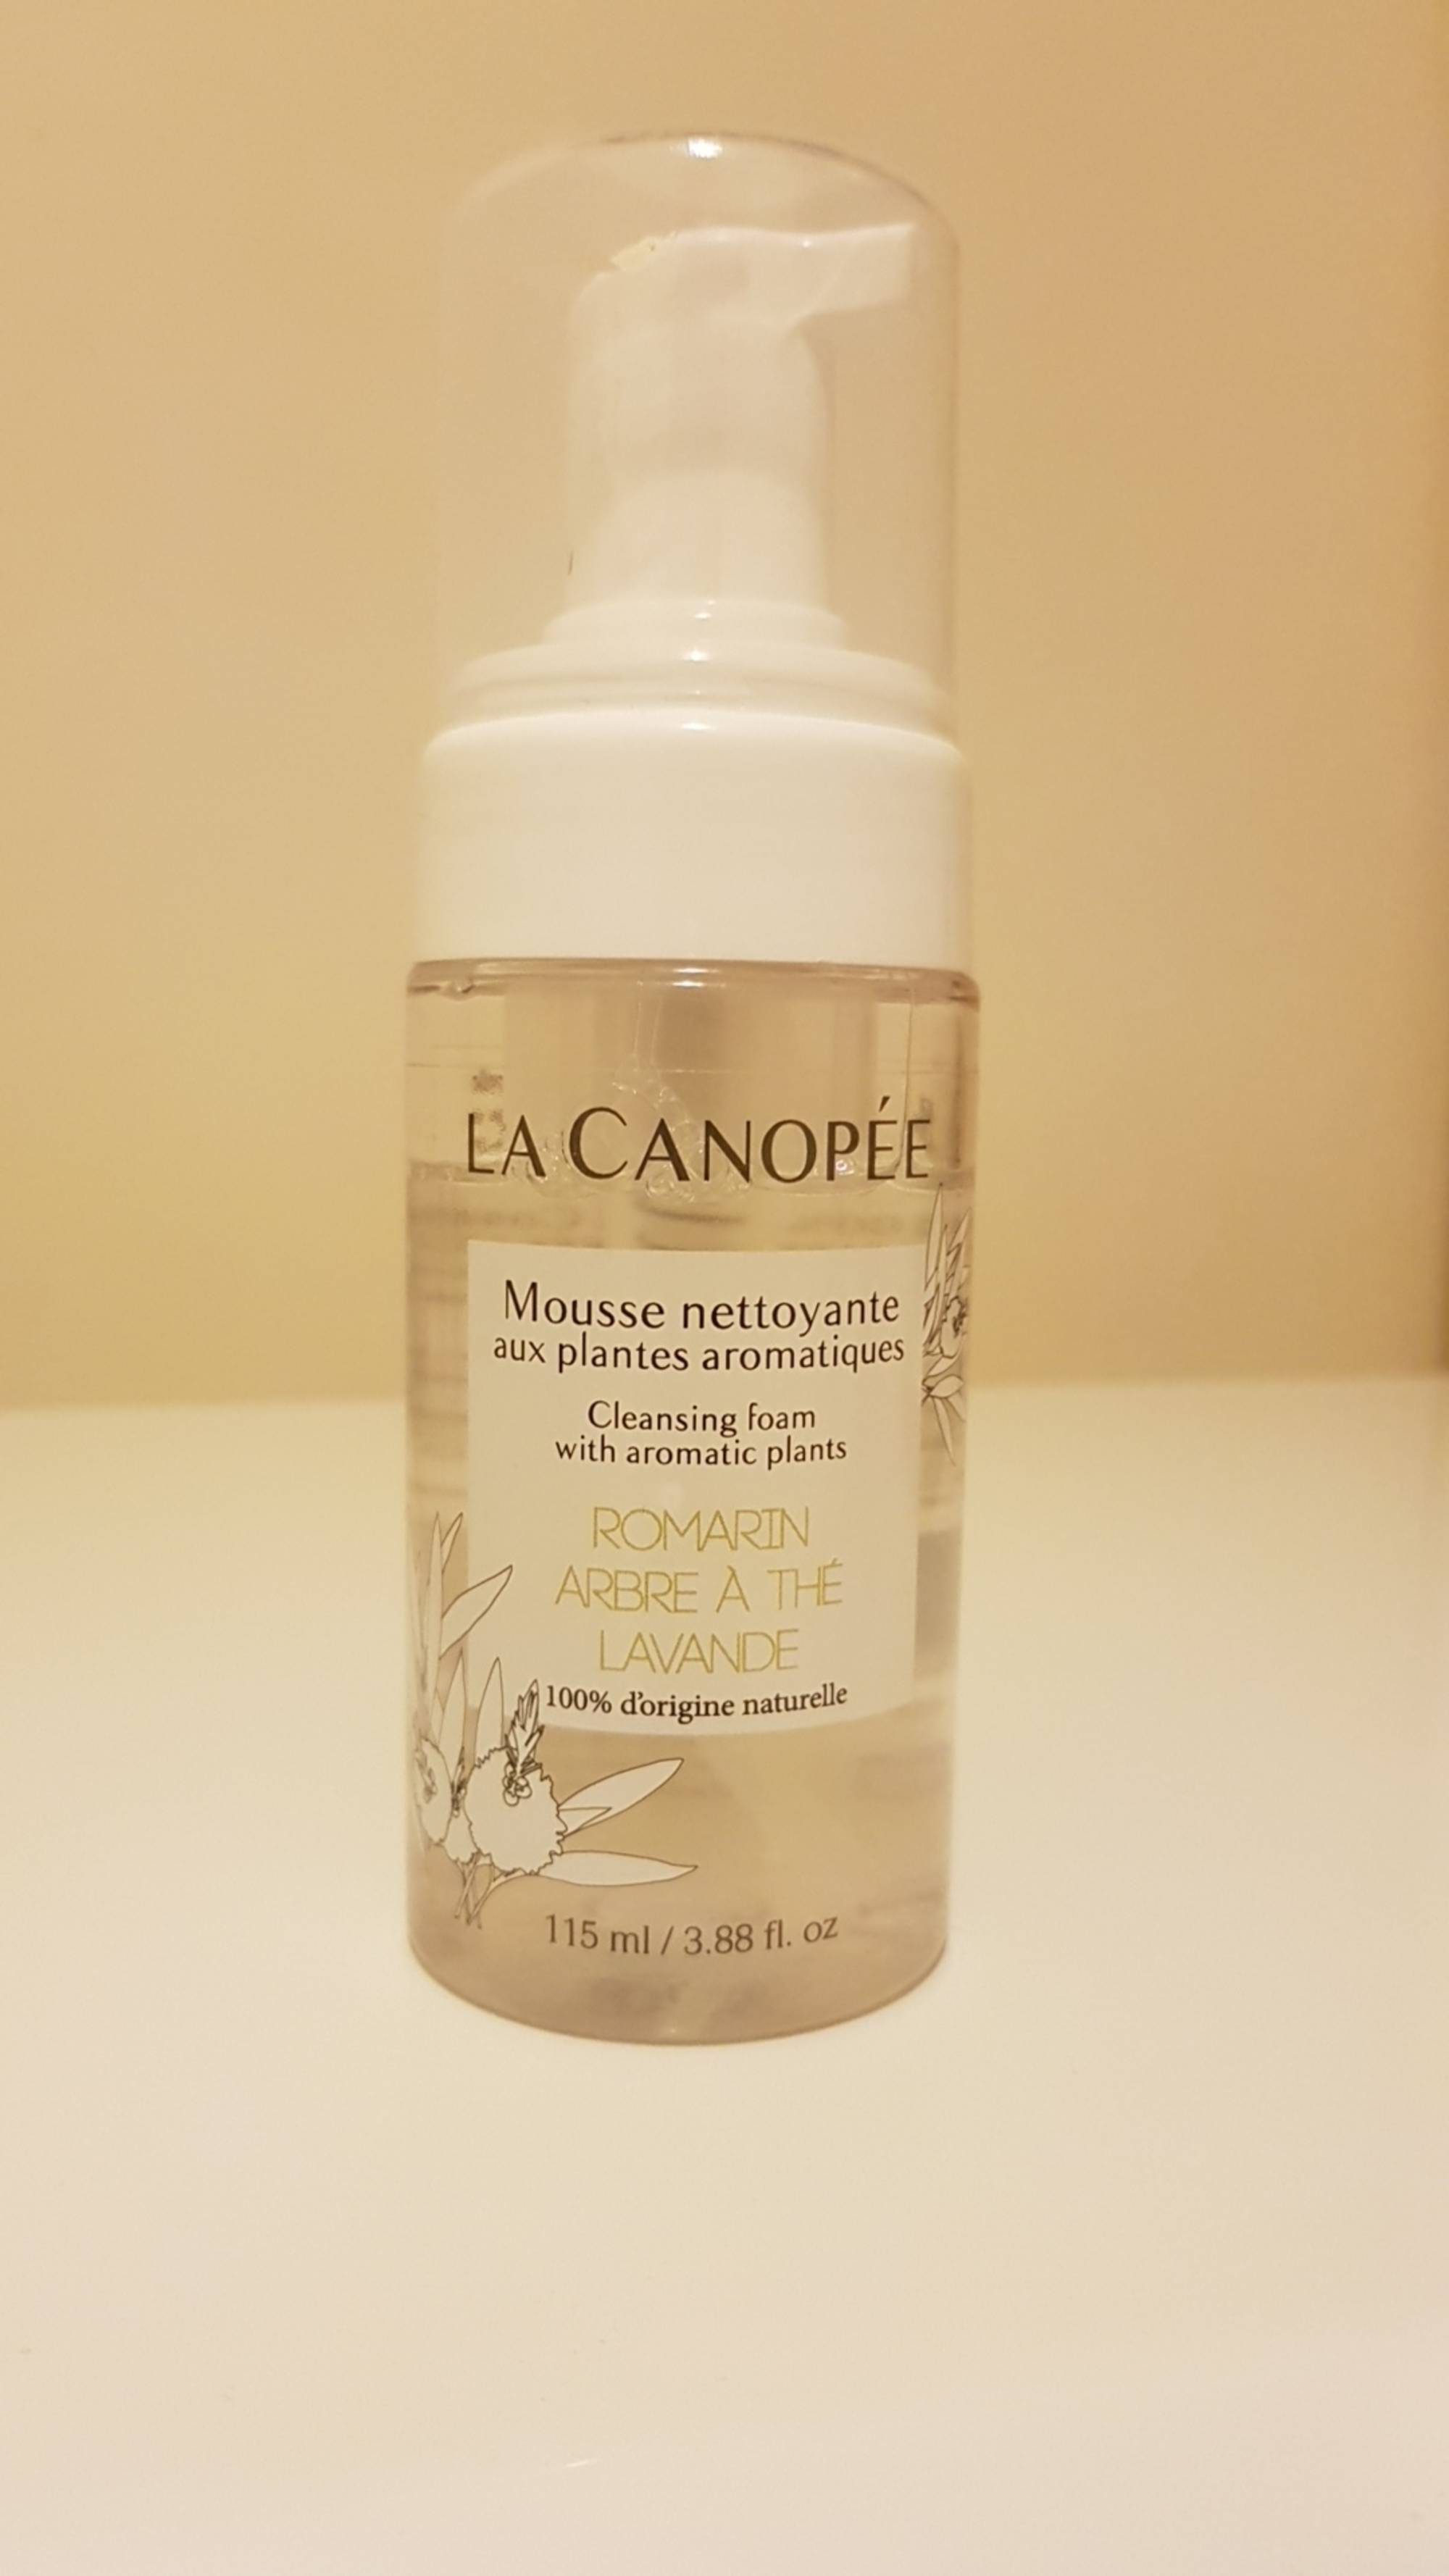 LA CANOPÉE - Mousse nettoyante aux plantes aromatiques